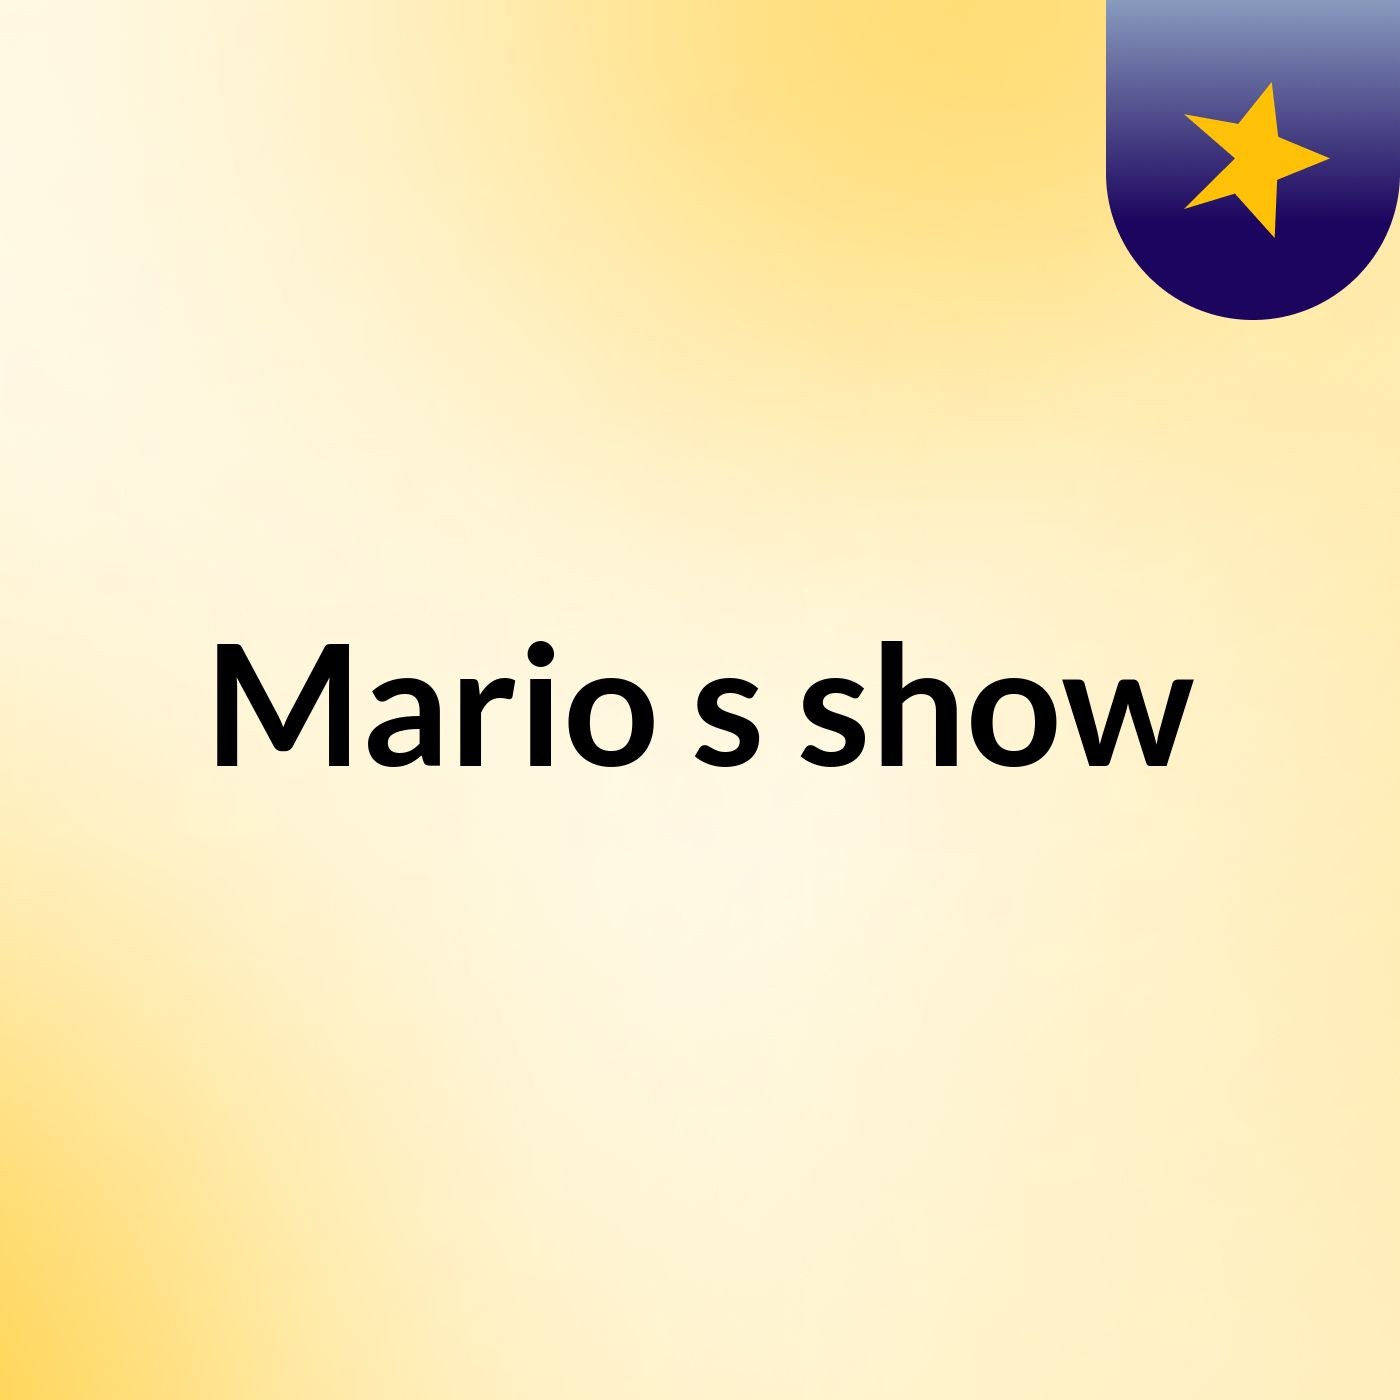 Mario's show